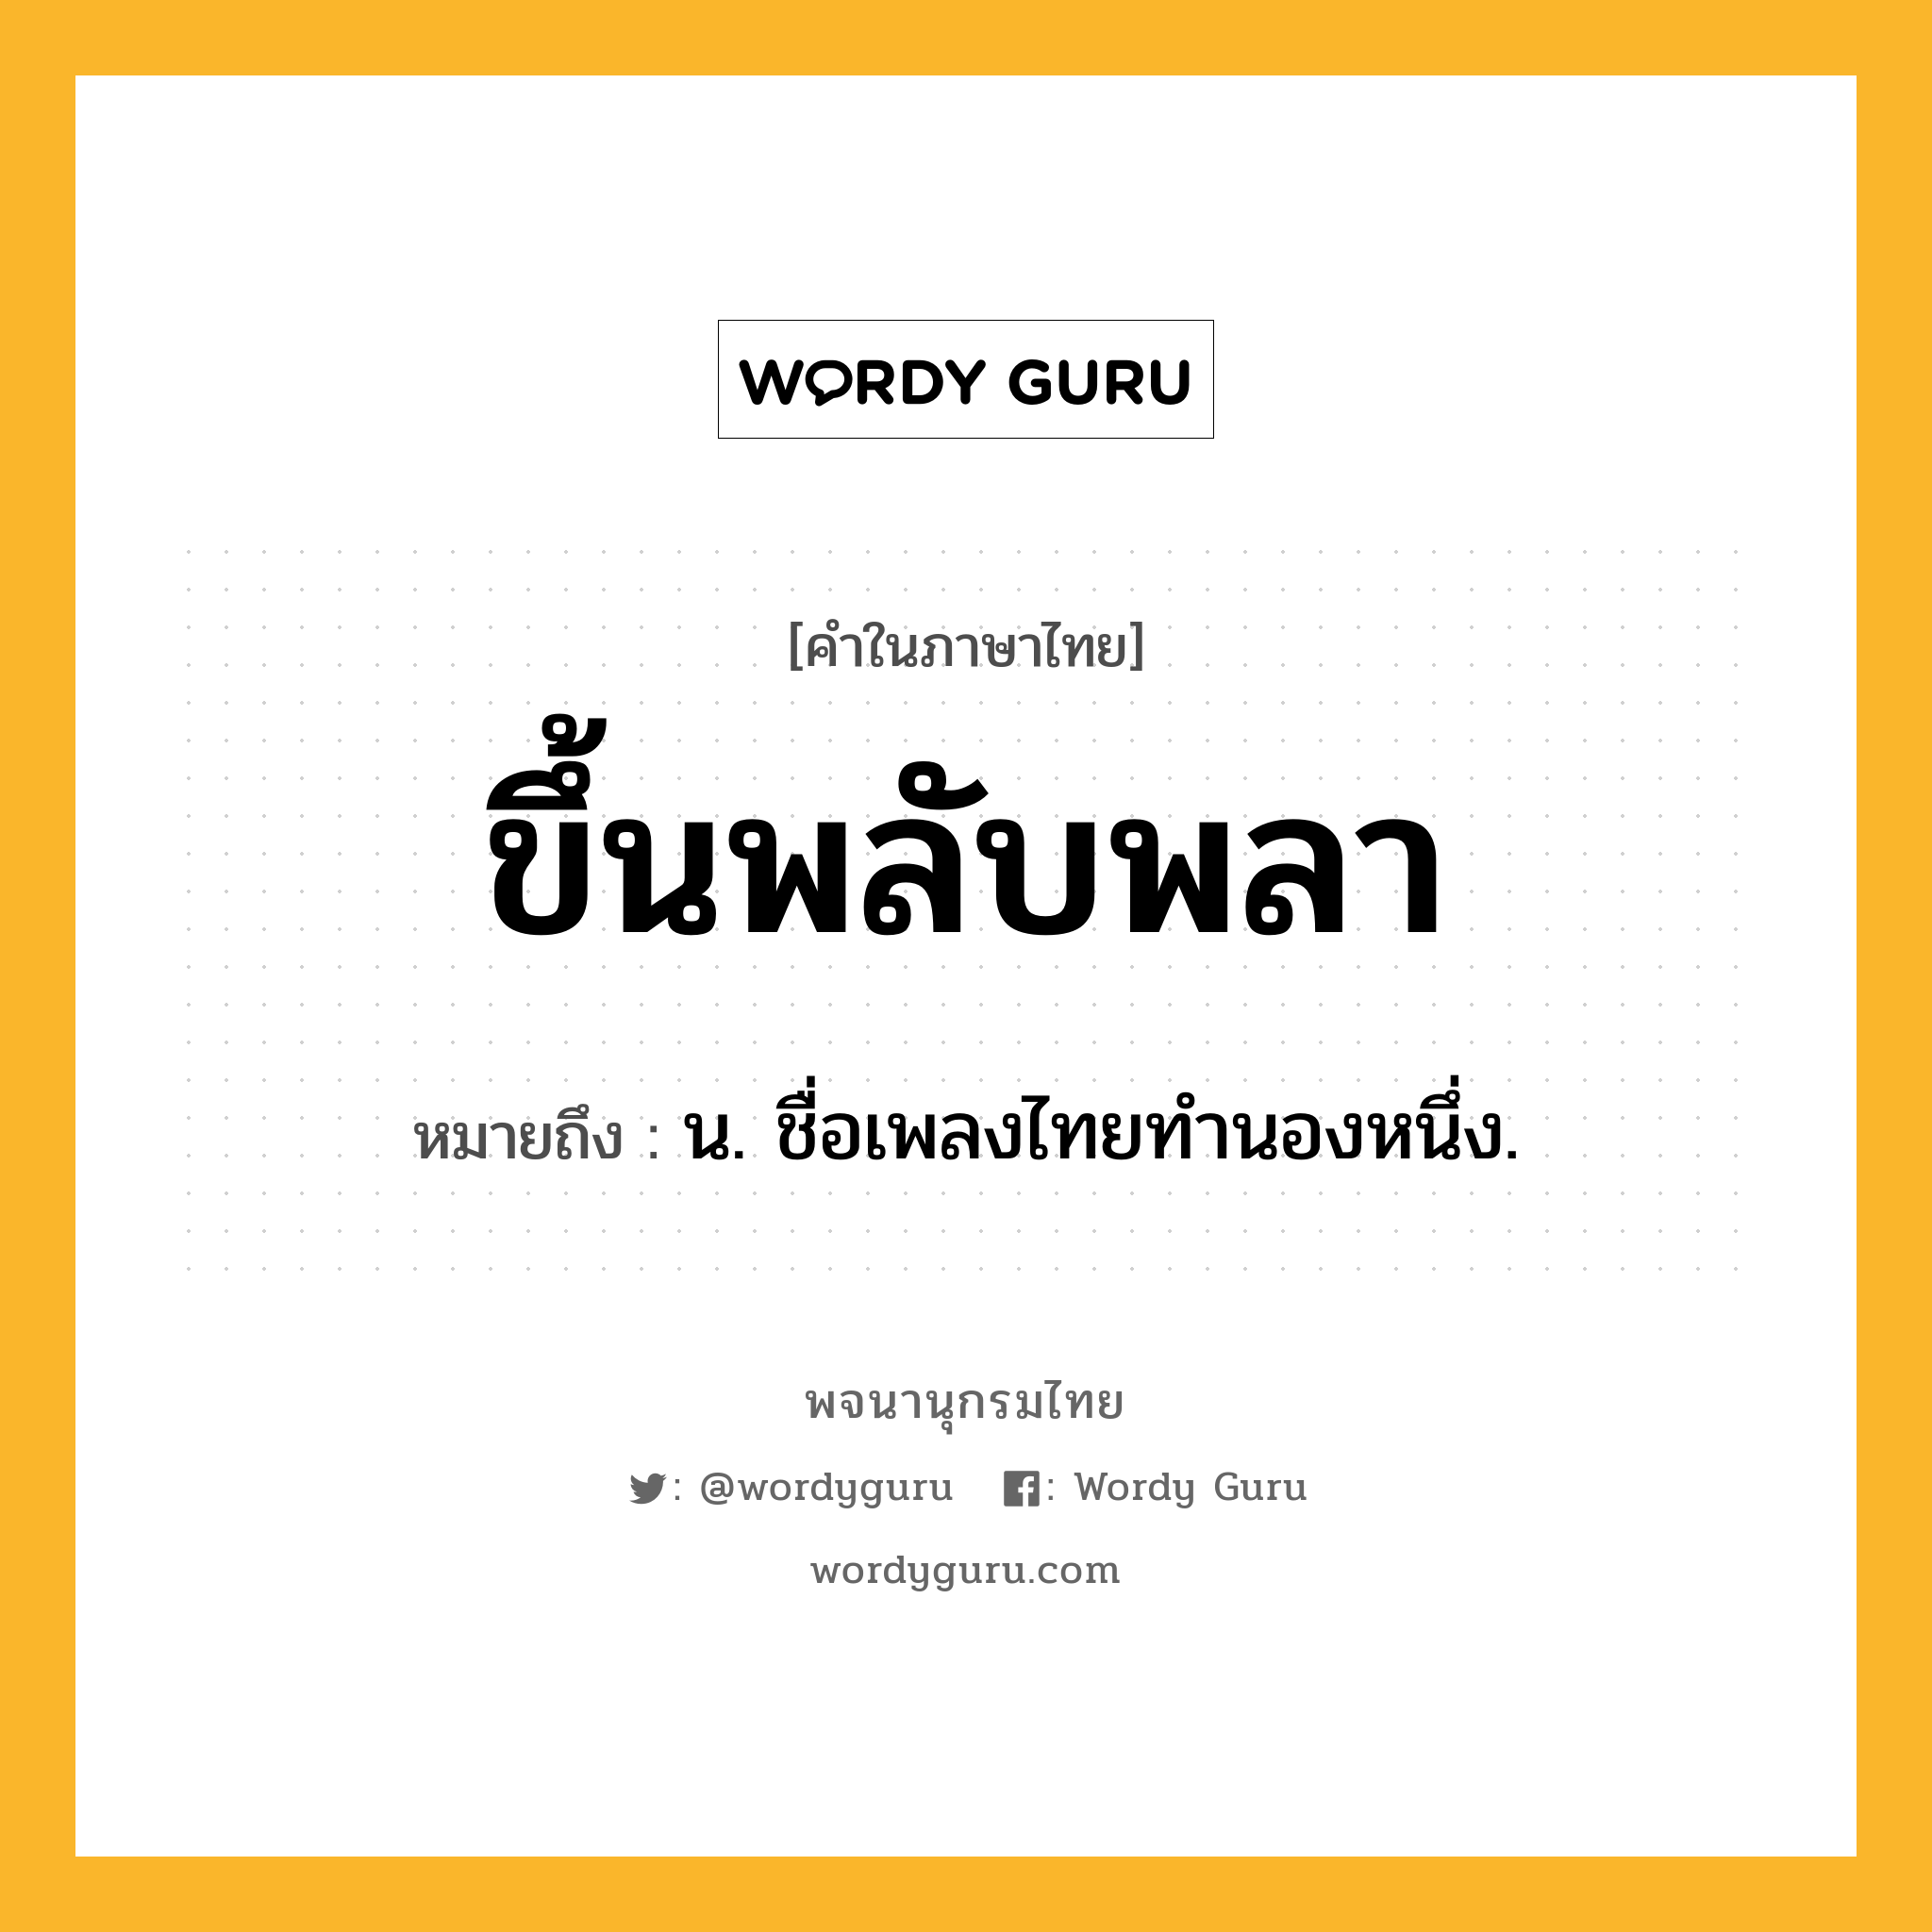 ขึ้นพลับพลา หมายถึงอะไร?, คำในภาษาไทย ขึ้นพลับพลา หมายถึง น. ชื่อเพลงไทยทำนองหนึ่ง.